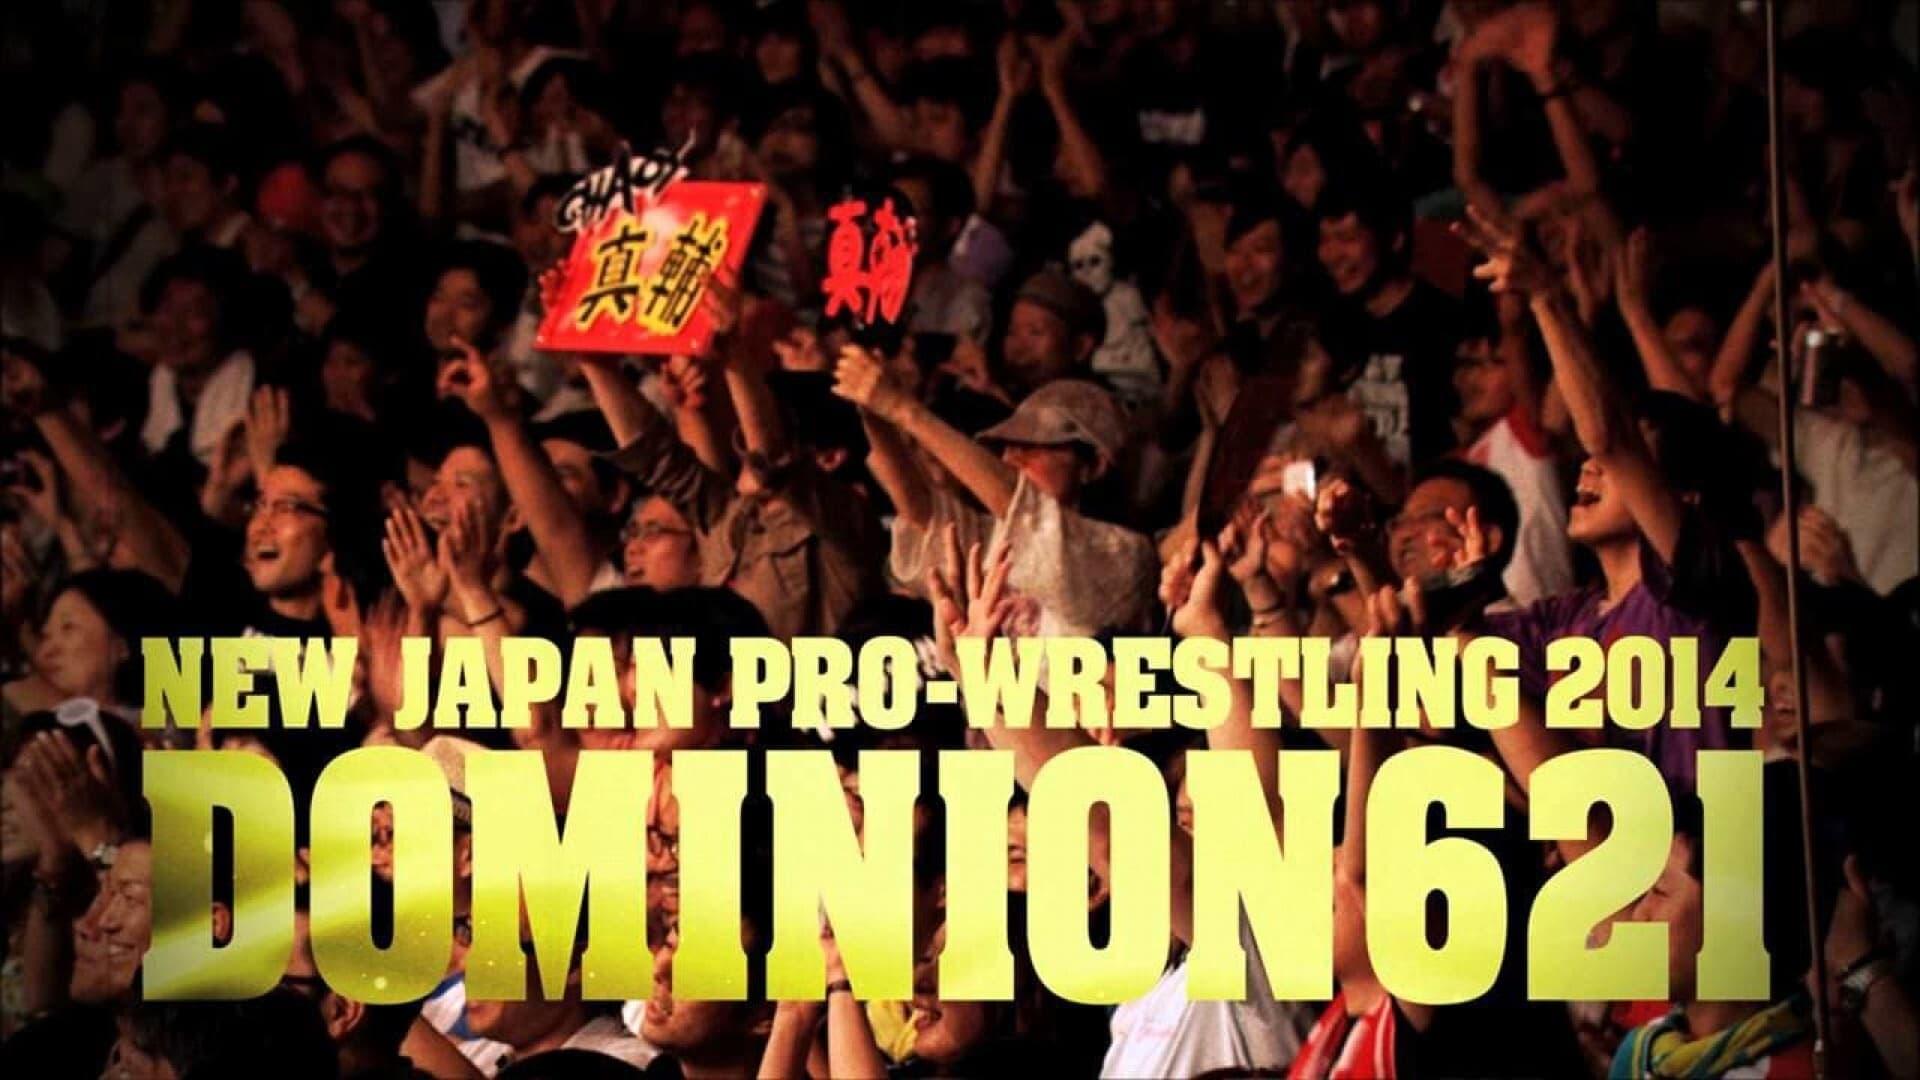 NJPW Dominion 6.21 backdrop